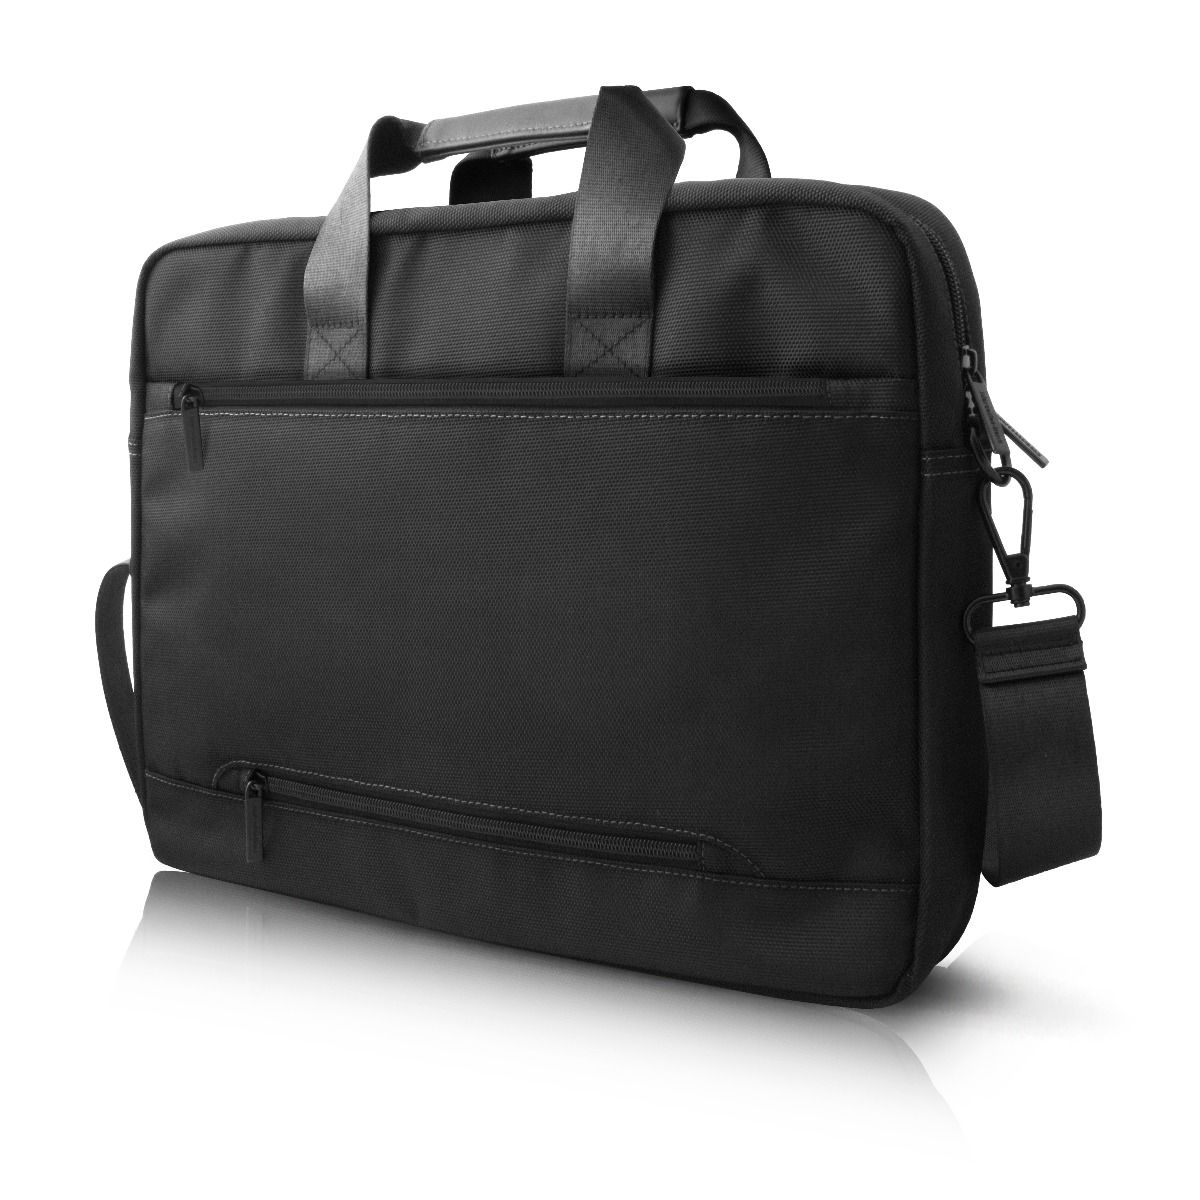 Mercedes Benz Pattern III 15” Messenger Laptop / Document Bag